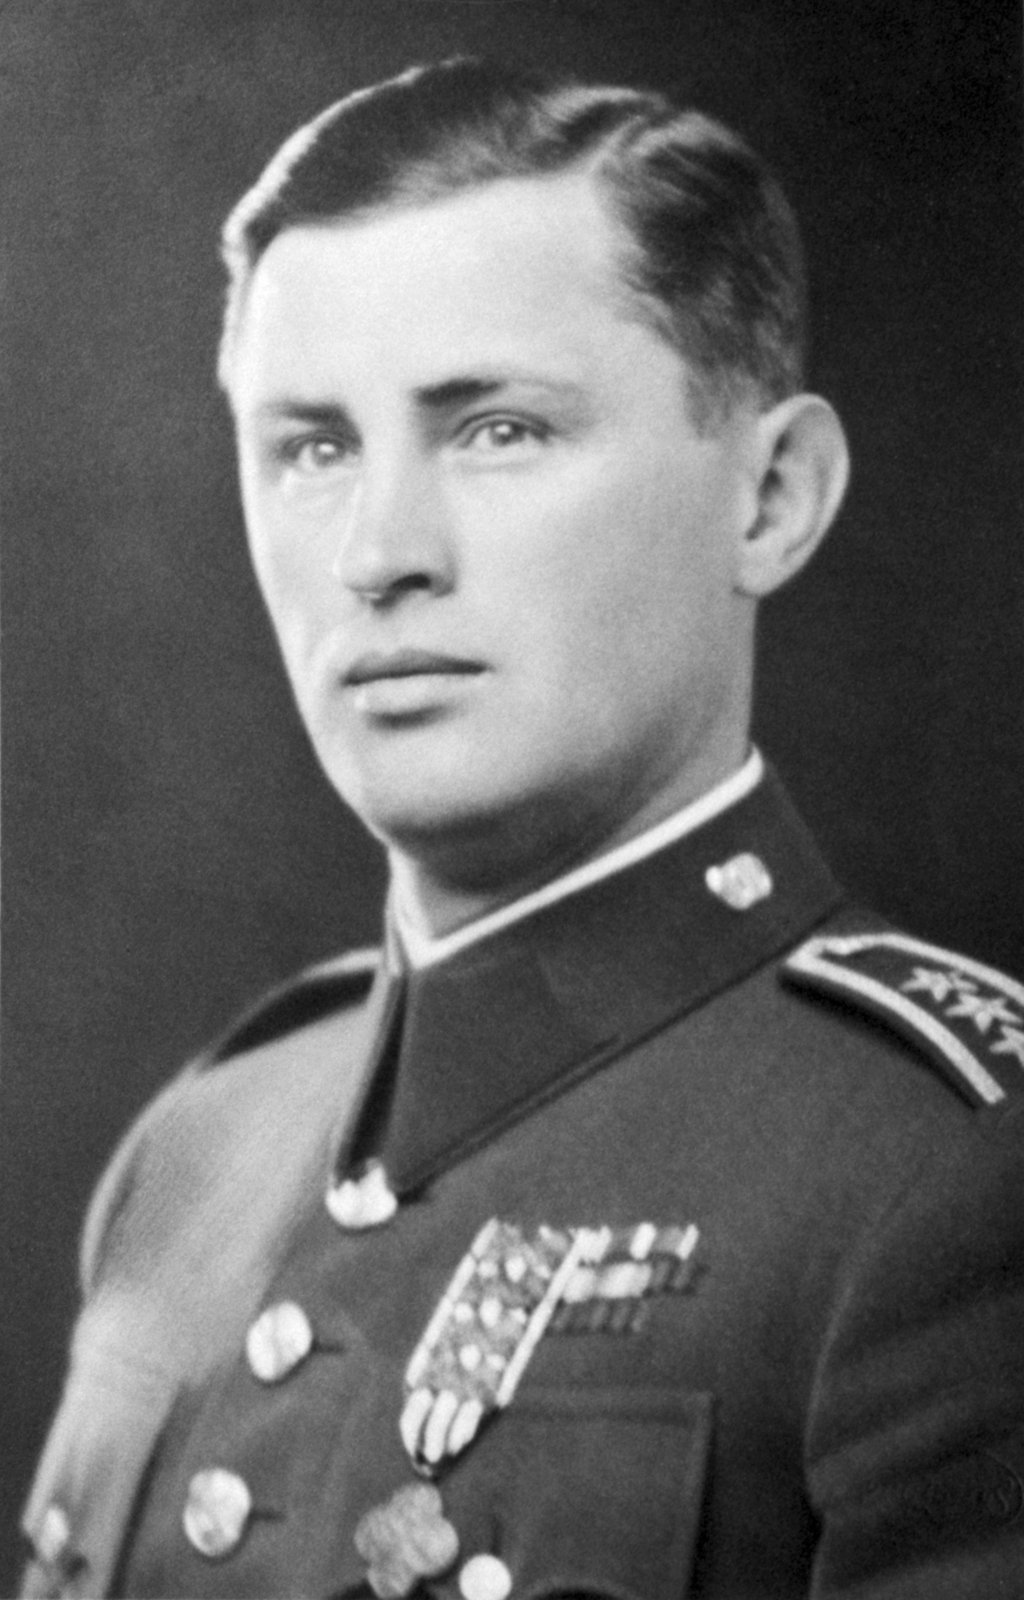 Patřil mezi nejvýznamnější české hrdiny 2. světové války.